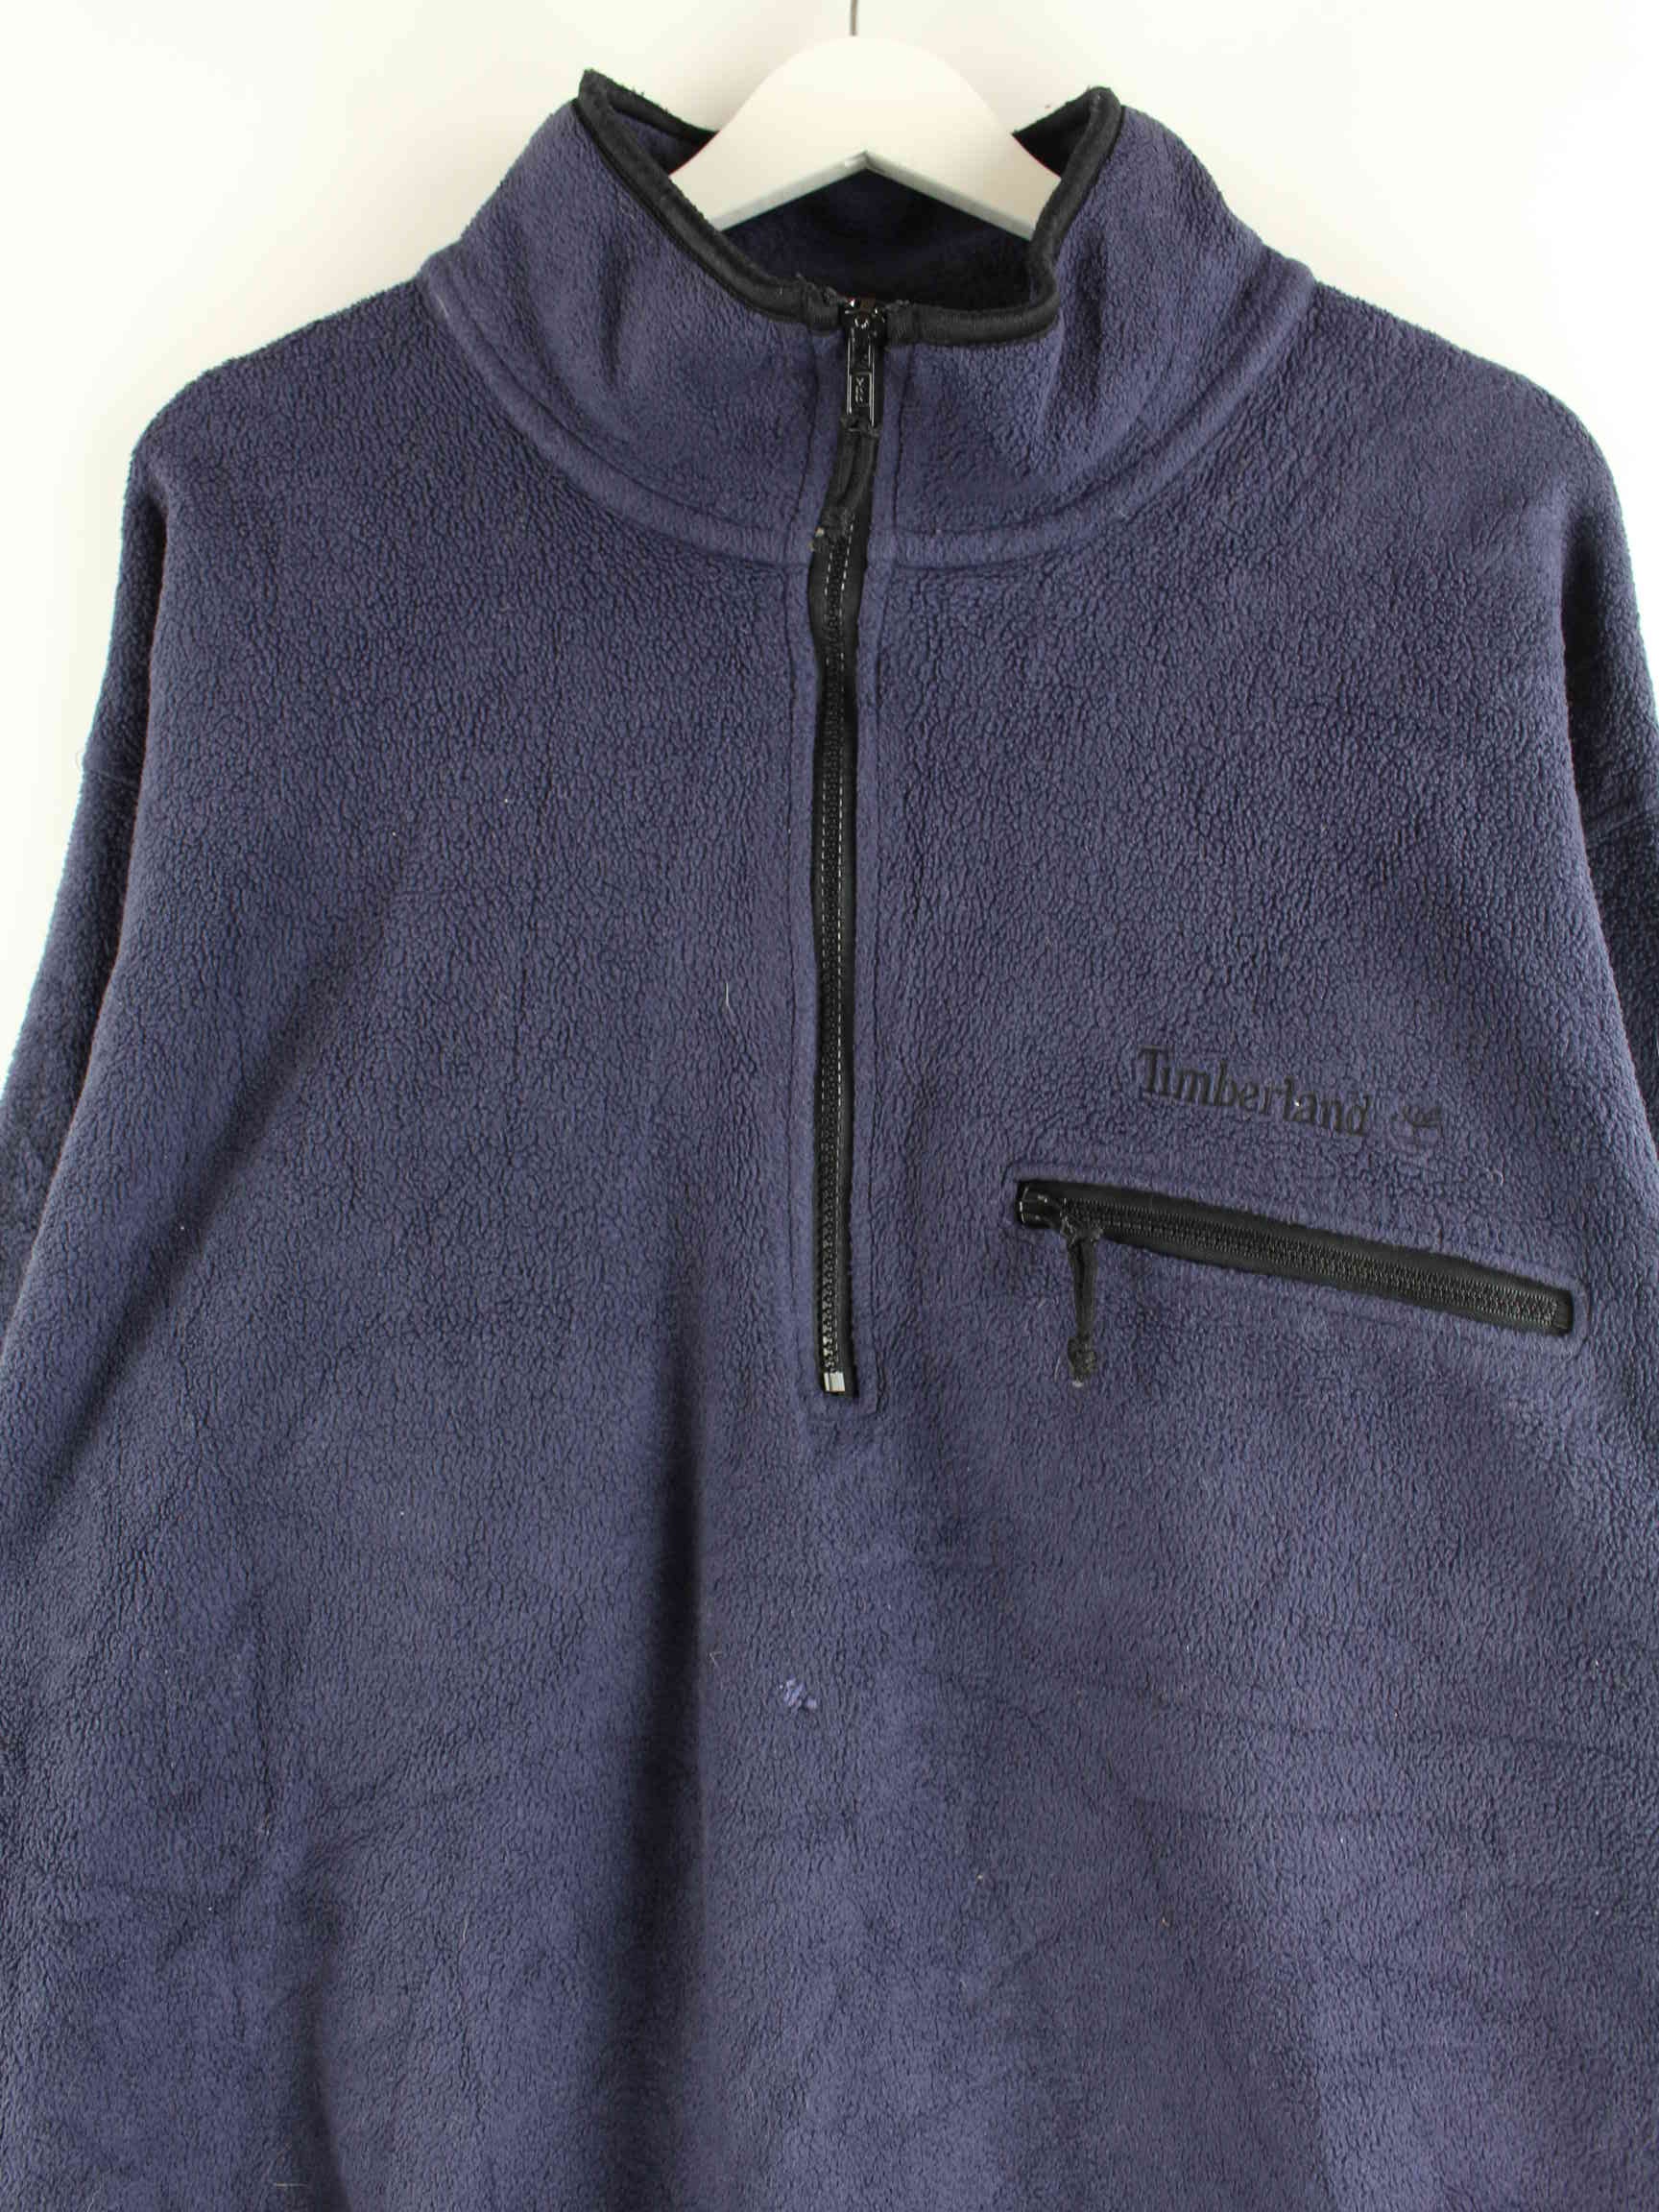 Timberland 90s Fleece Half Zip Sweater Blau L (detail image 1)